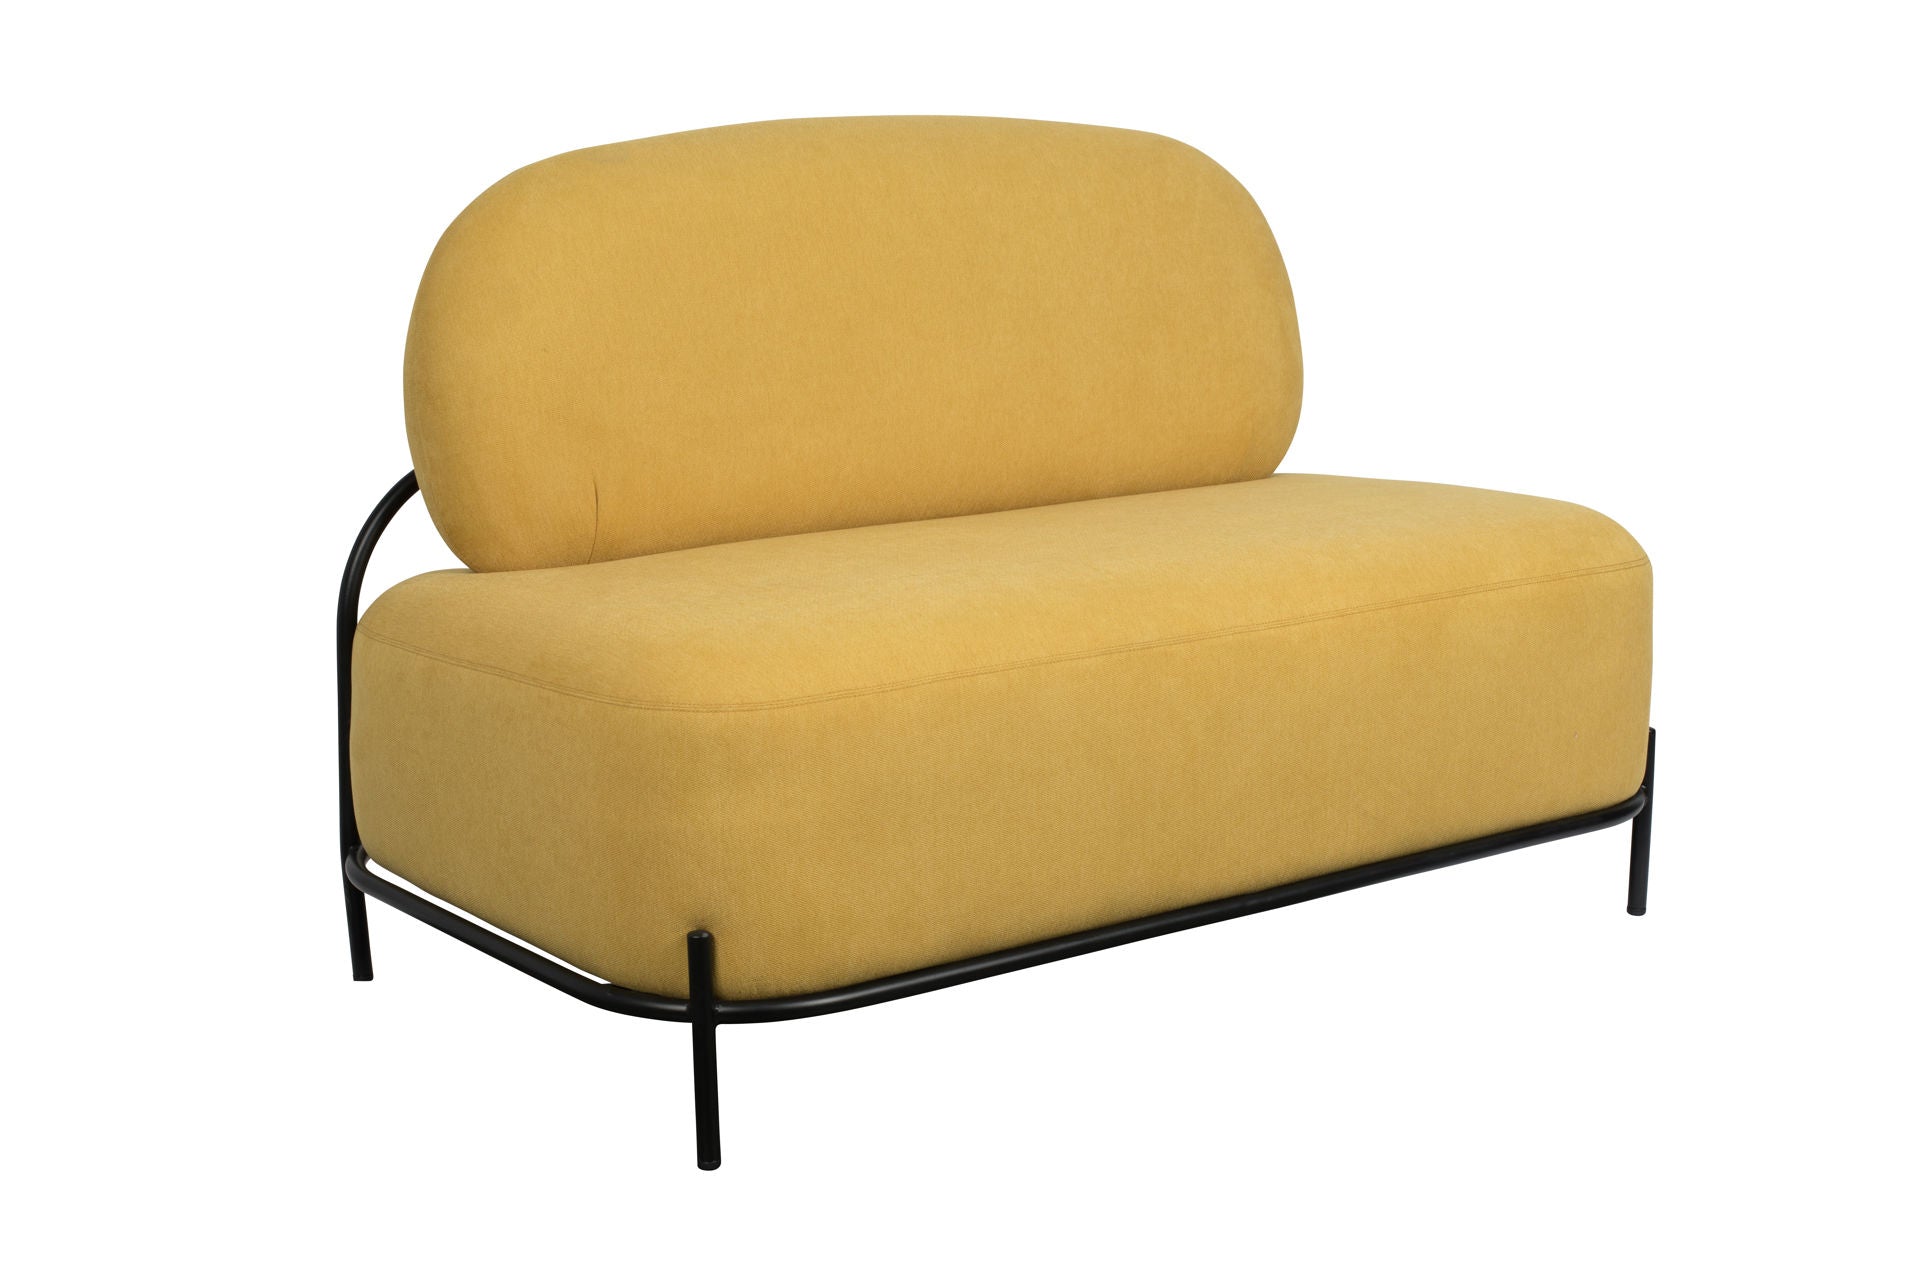 Nancy's Upper Montclair Lounge Chair - Industriel - Jaune - Polyester, Contreplaqué, Fer - 71,5 cm x 125 cm x 77 cm